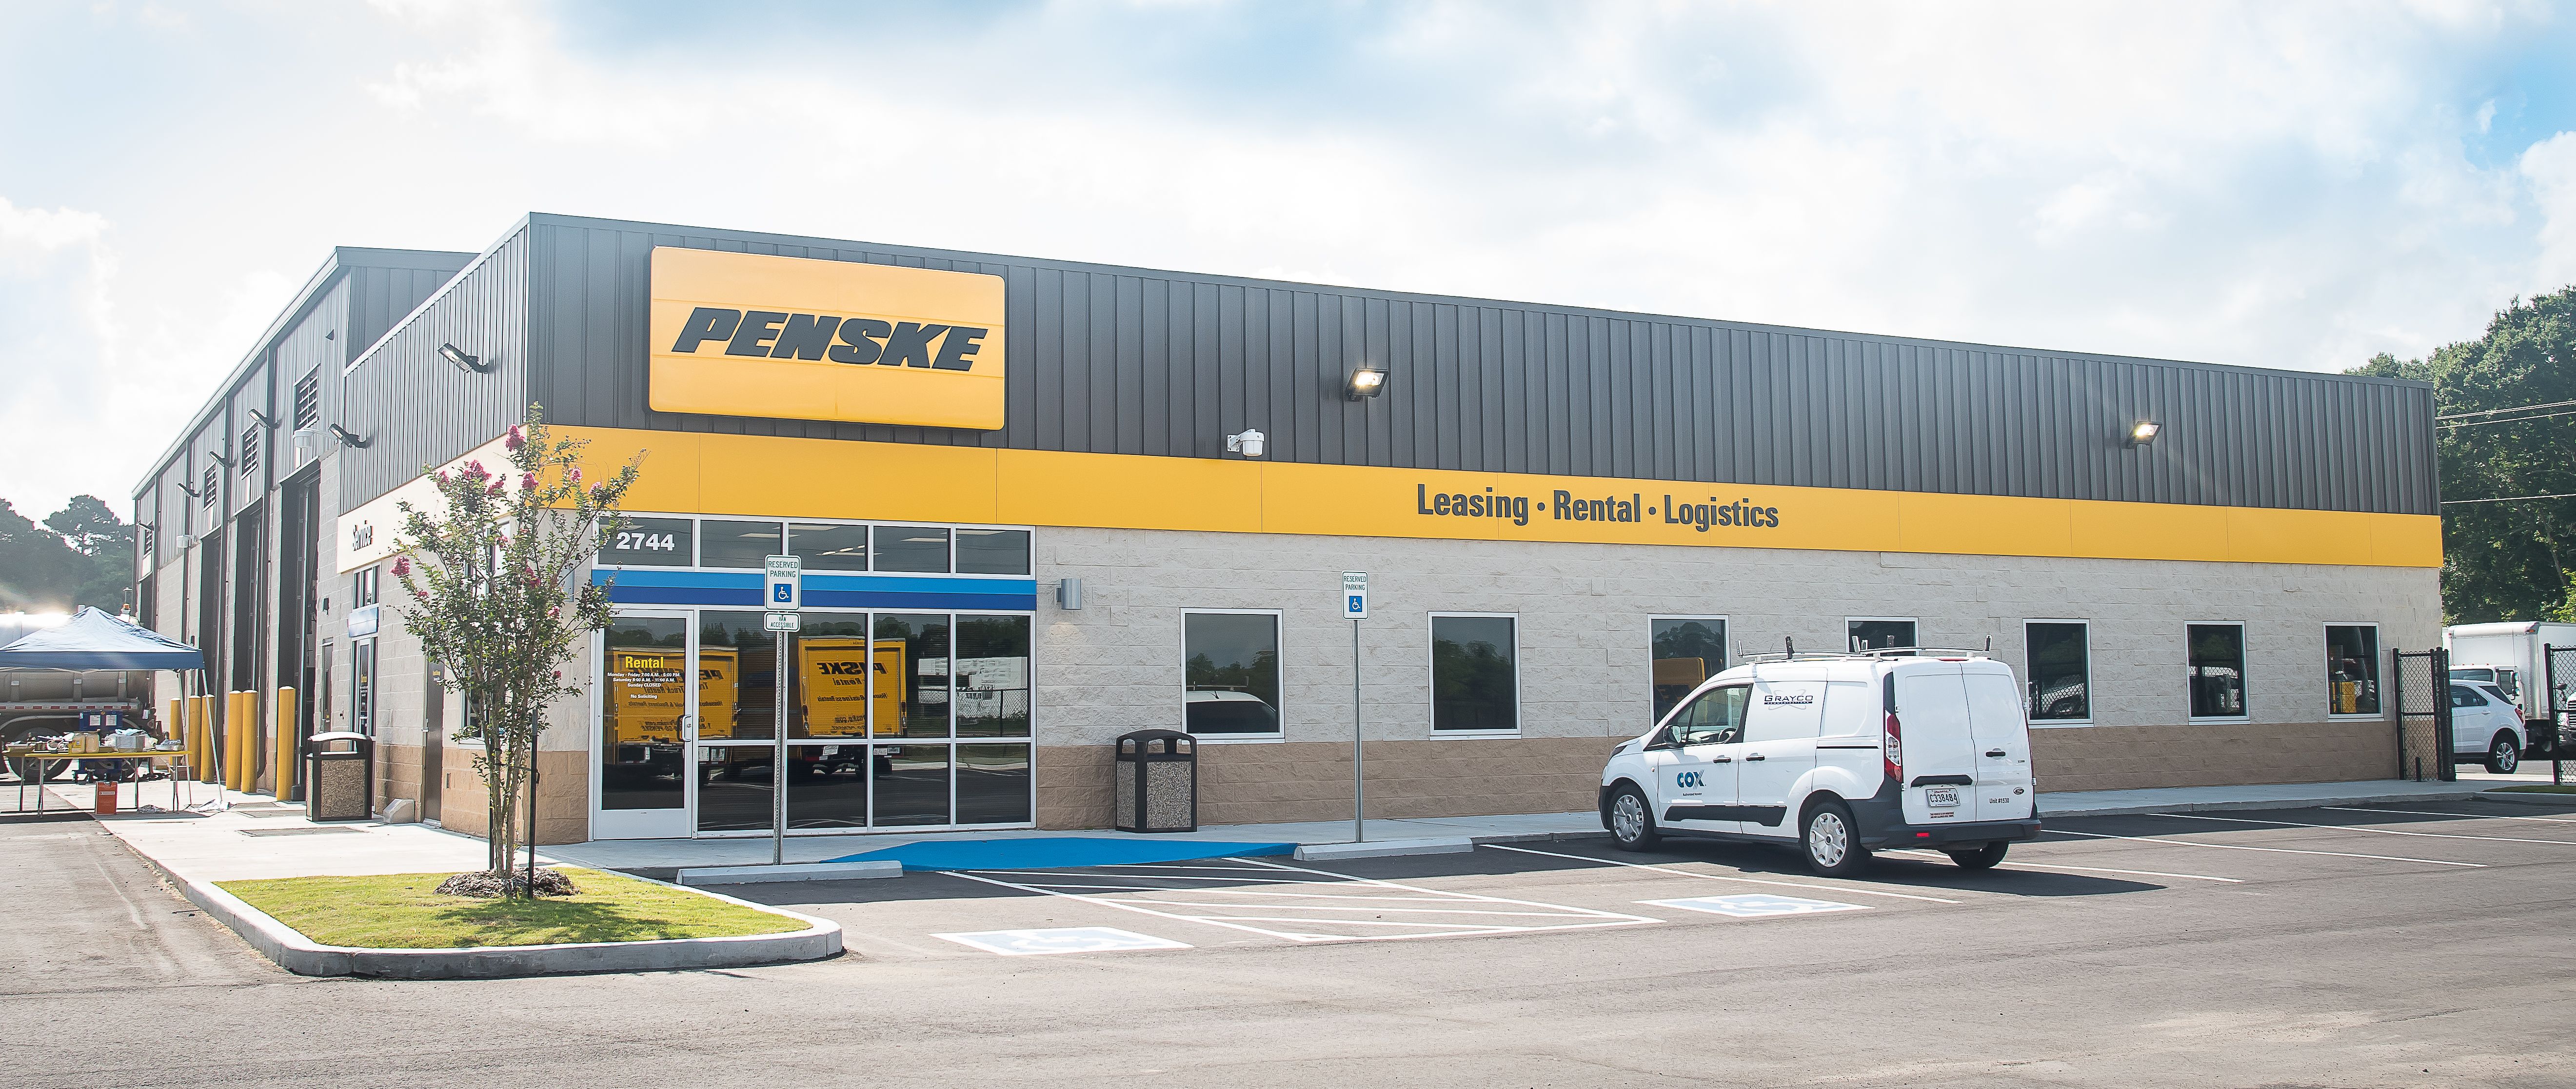 Penske Truck Leasing Opens New Facility in Lafayette, Louisiana